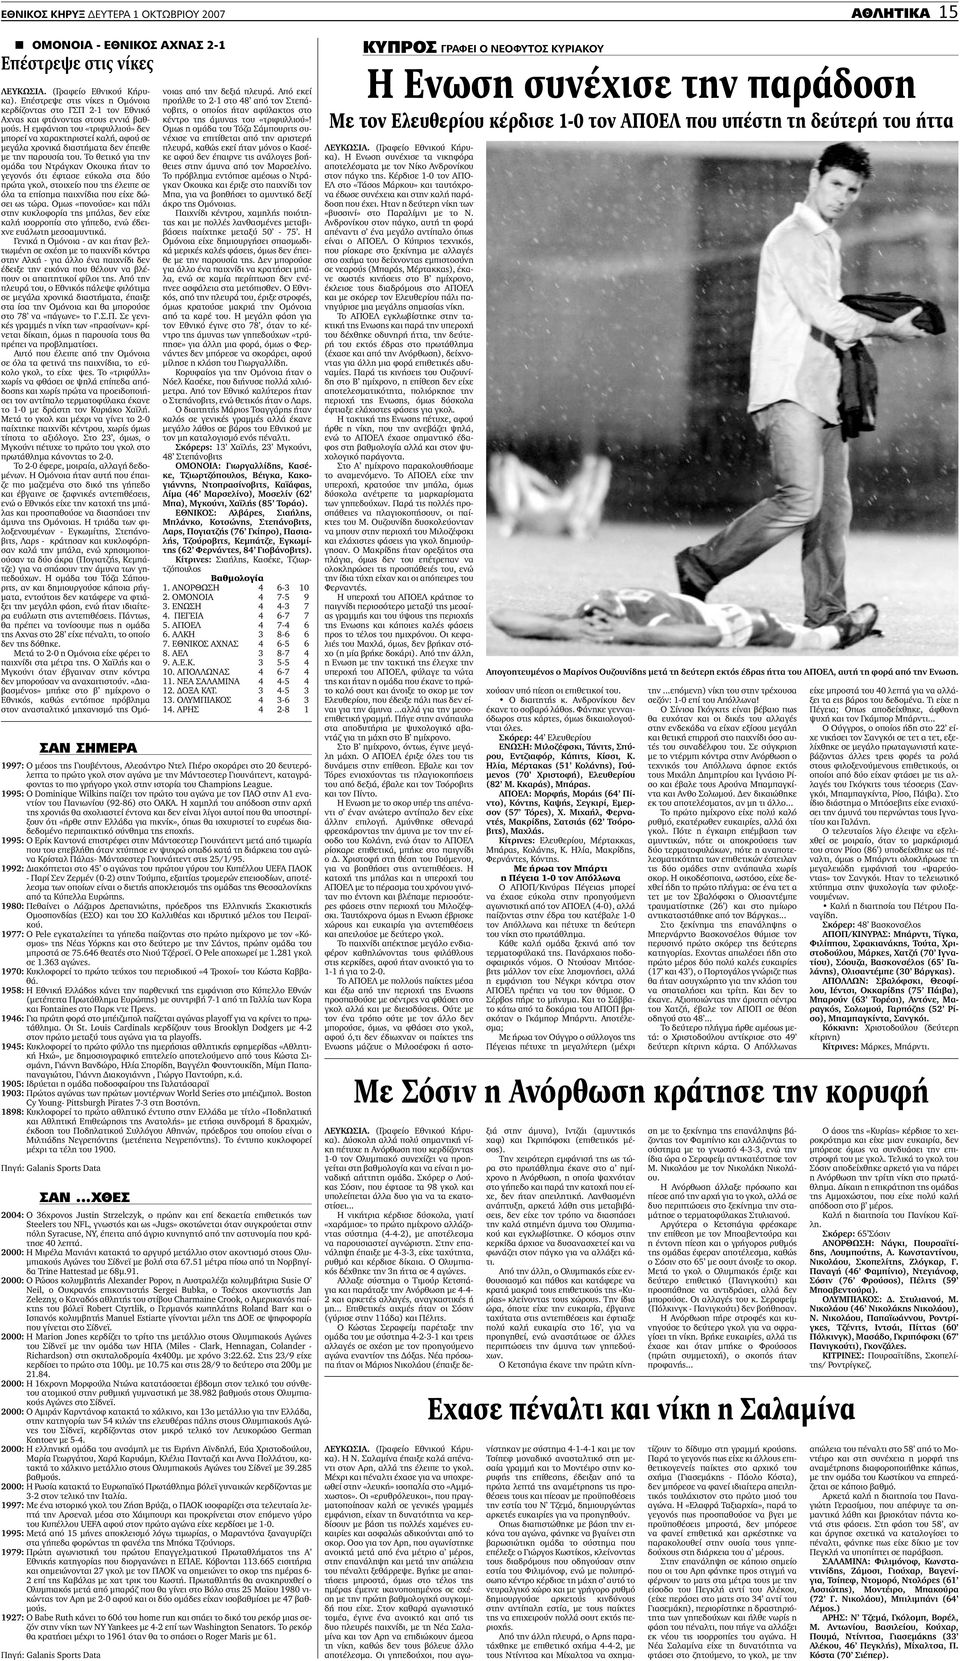 1995: O Dominique Wilkins παίζει τον πρώτο του αγώνα µε τον ΠΑΟ στην Α1 εναντίον του Πανιωνίου (92-86) στο ΟΑΚΑ.